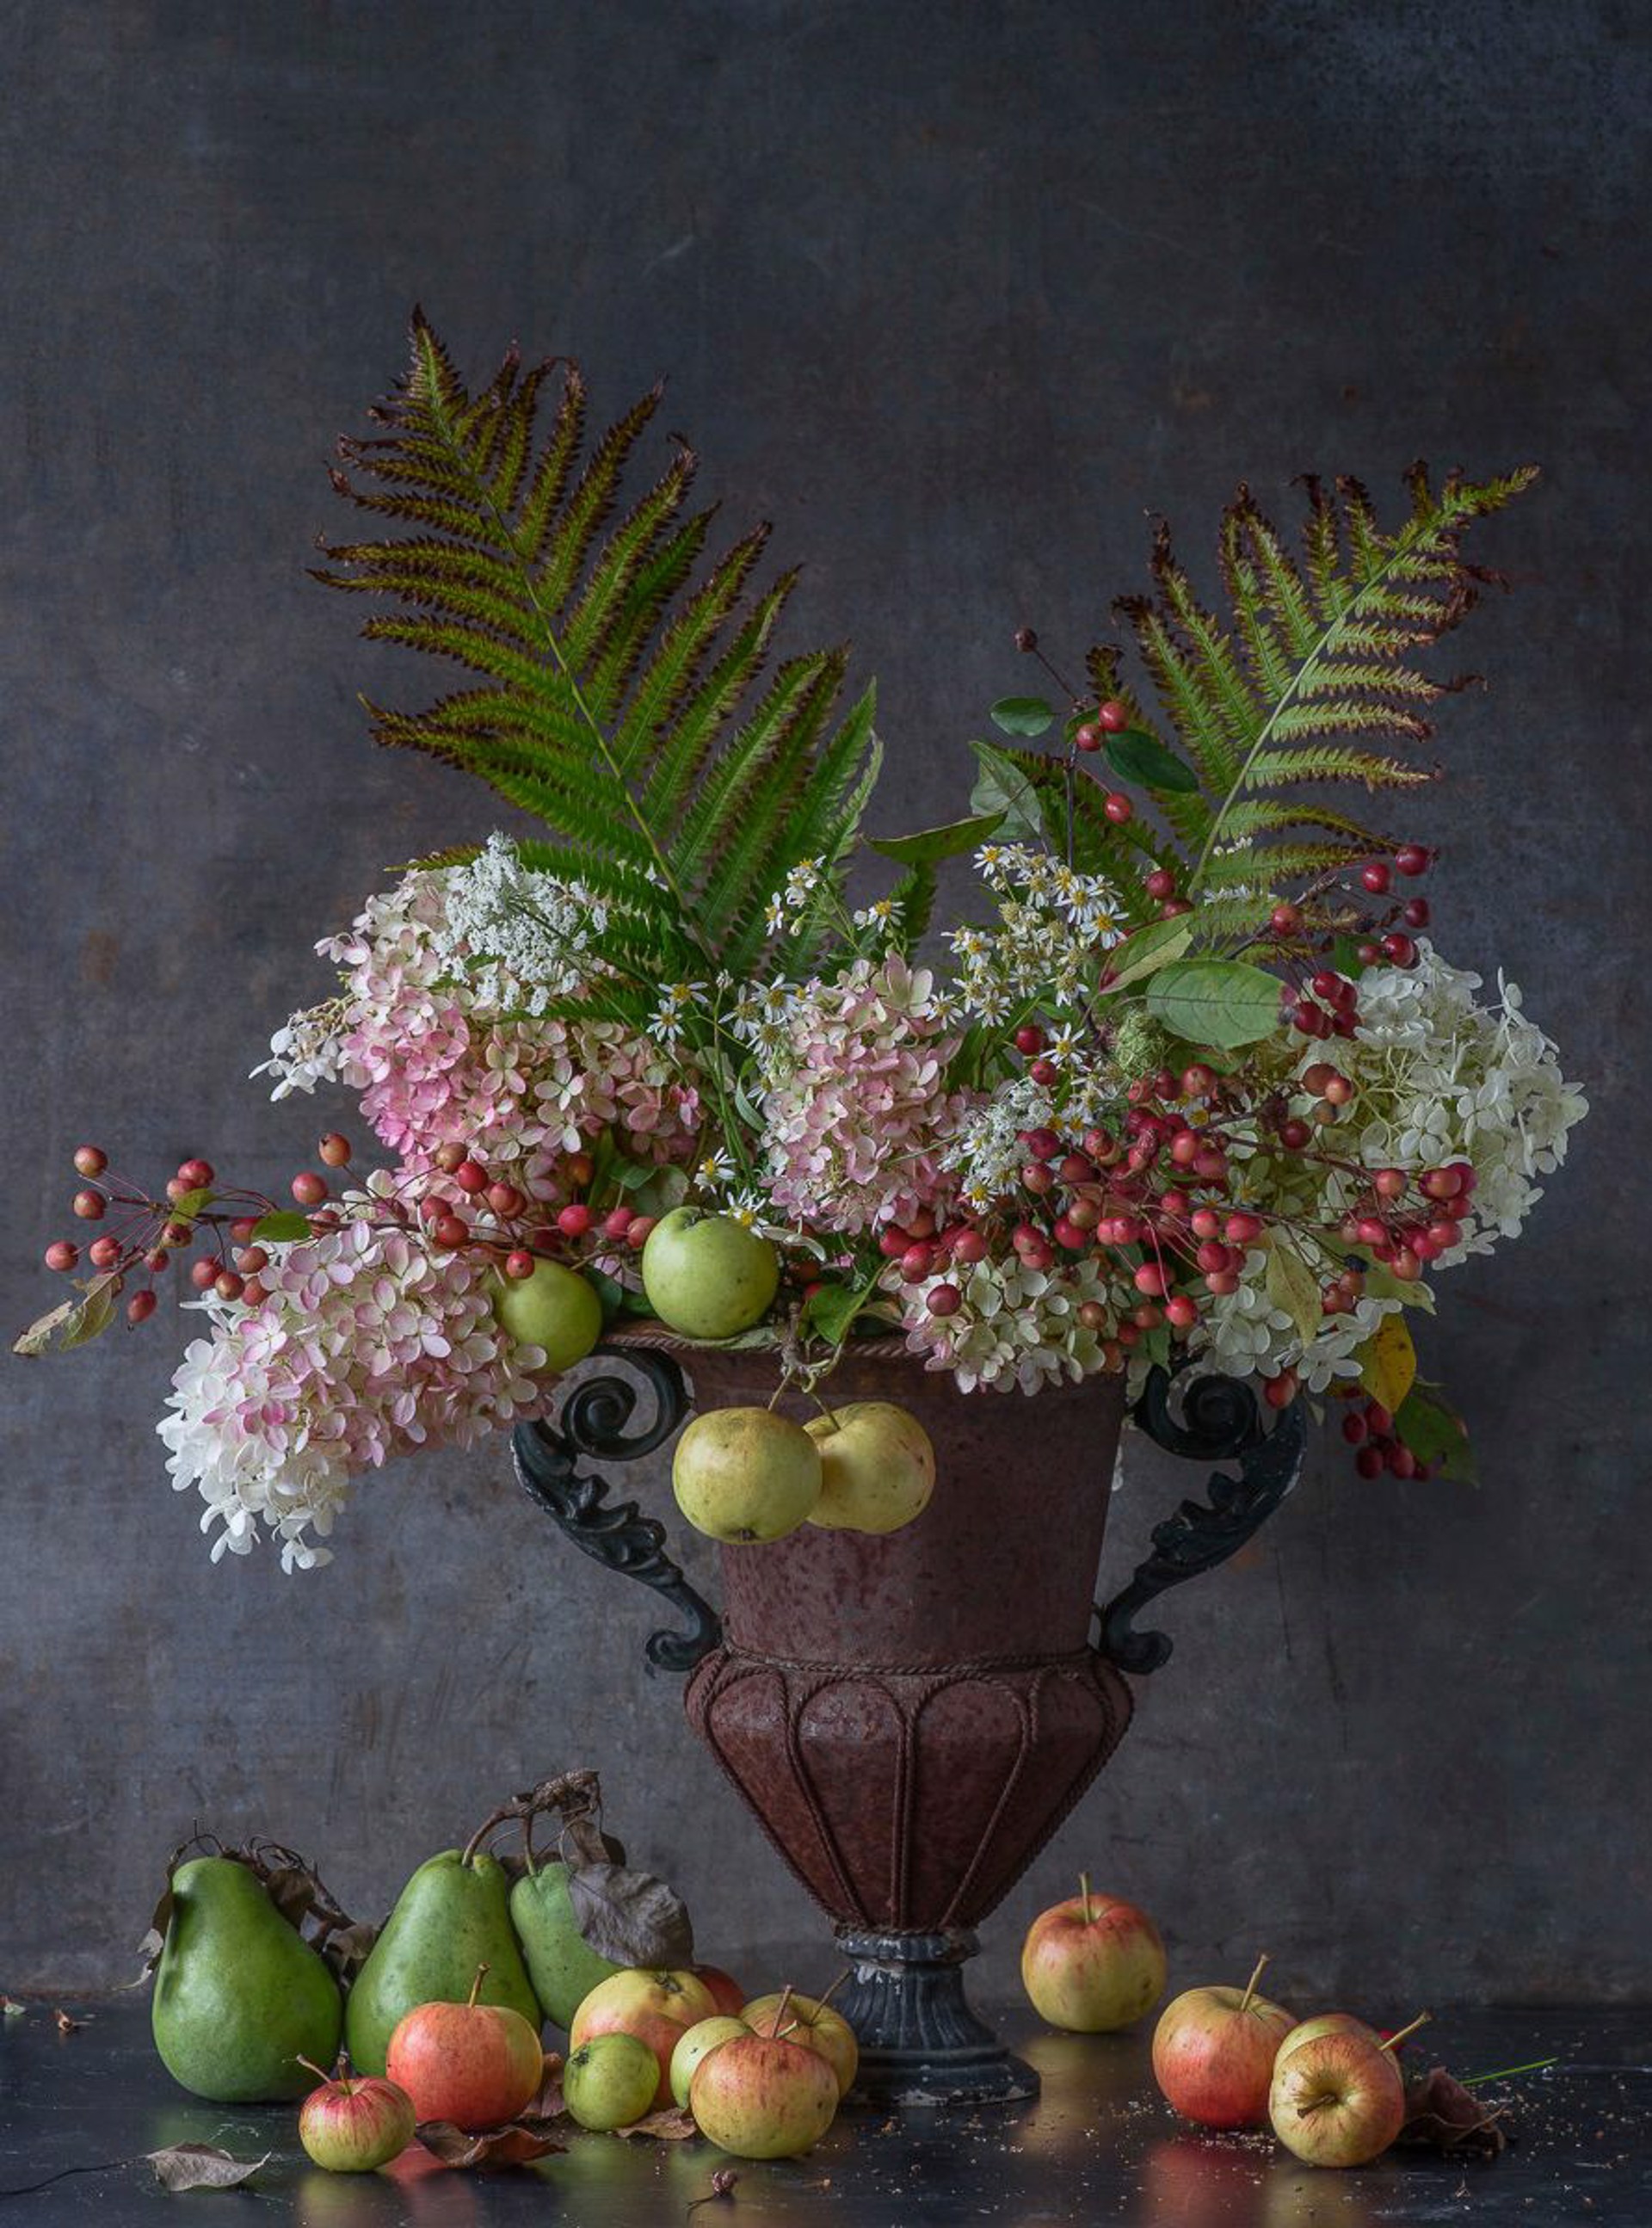 Hydrangea & Apples in Urn by Lynn Karlin